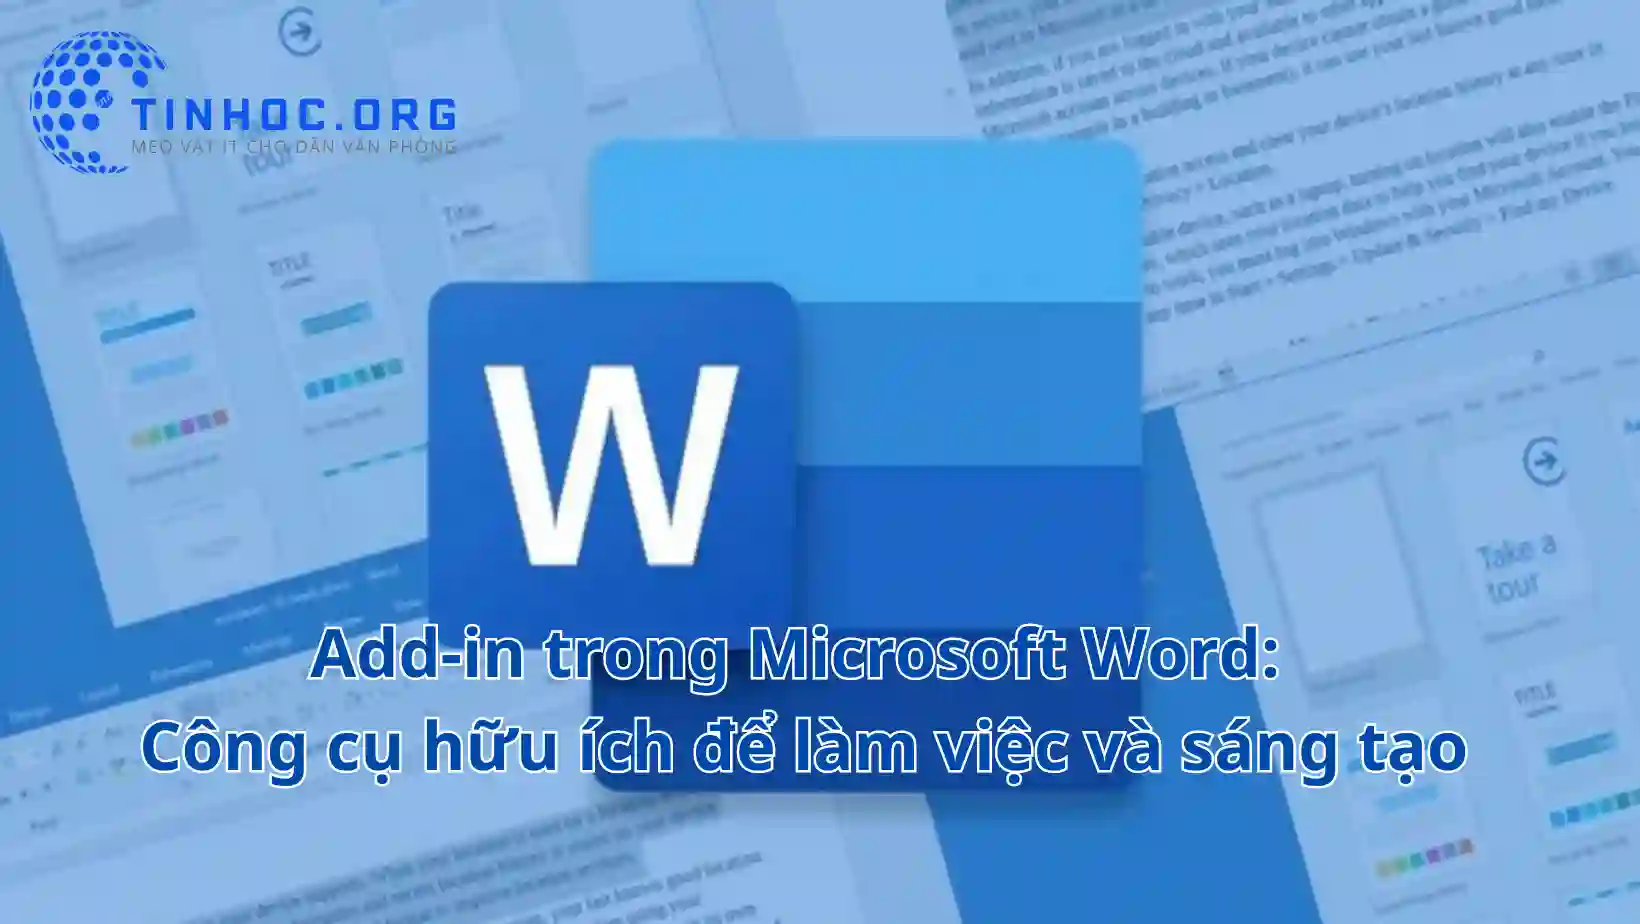 Add-in là một cách tuyệt vời để thêm các tính năng và khả năng mới cho Microsoft Word, giúp bạn làm việc hiệu quả hơn và tạo ra các tài liệu ấn tượng hơn.